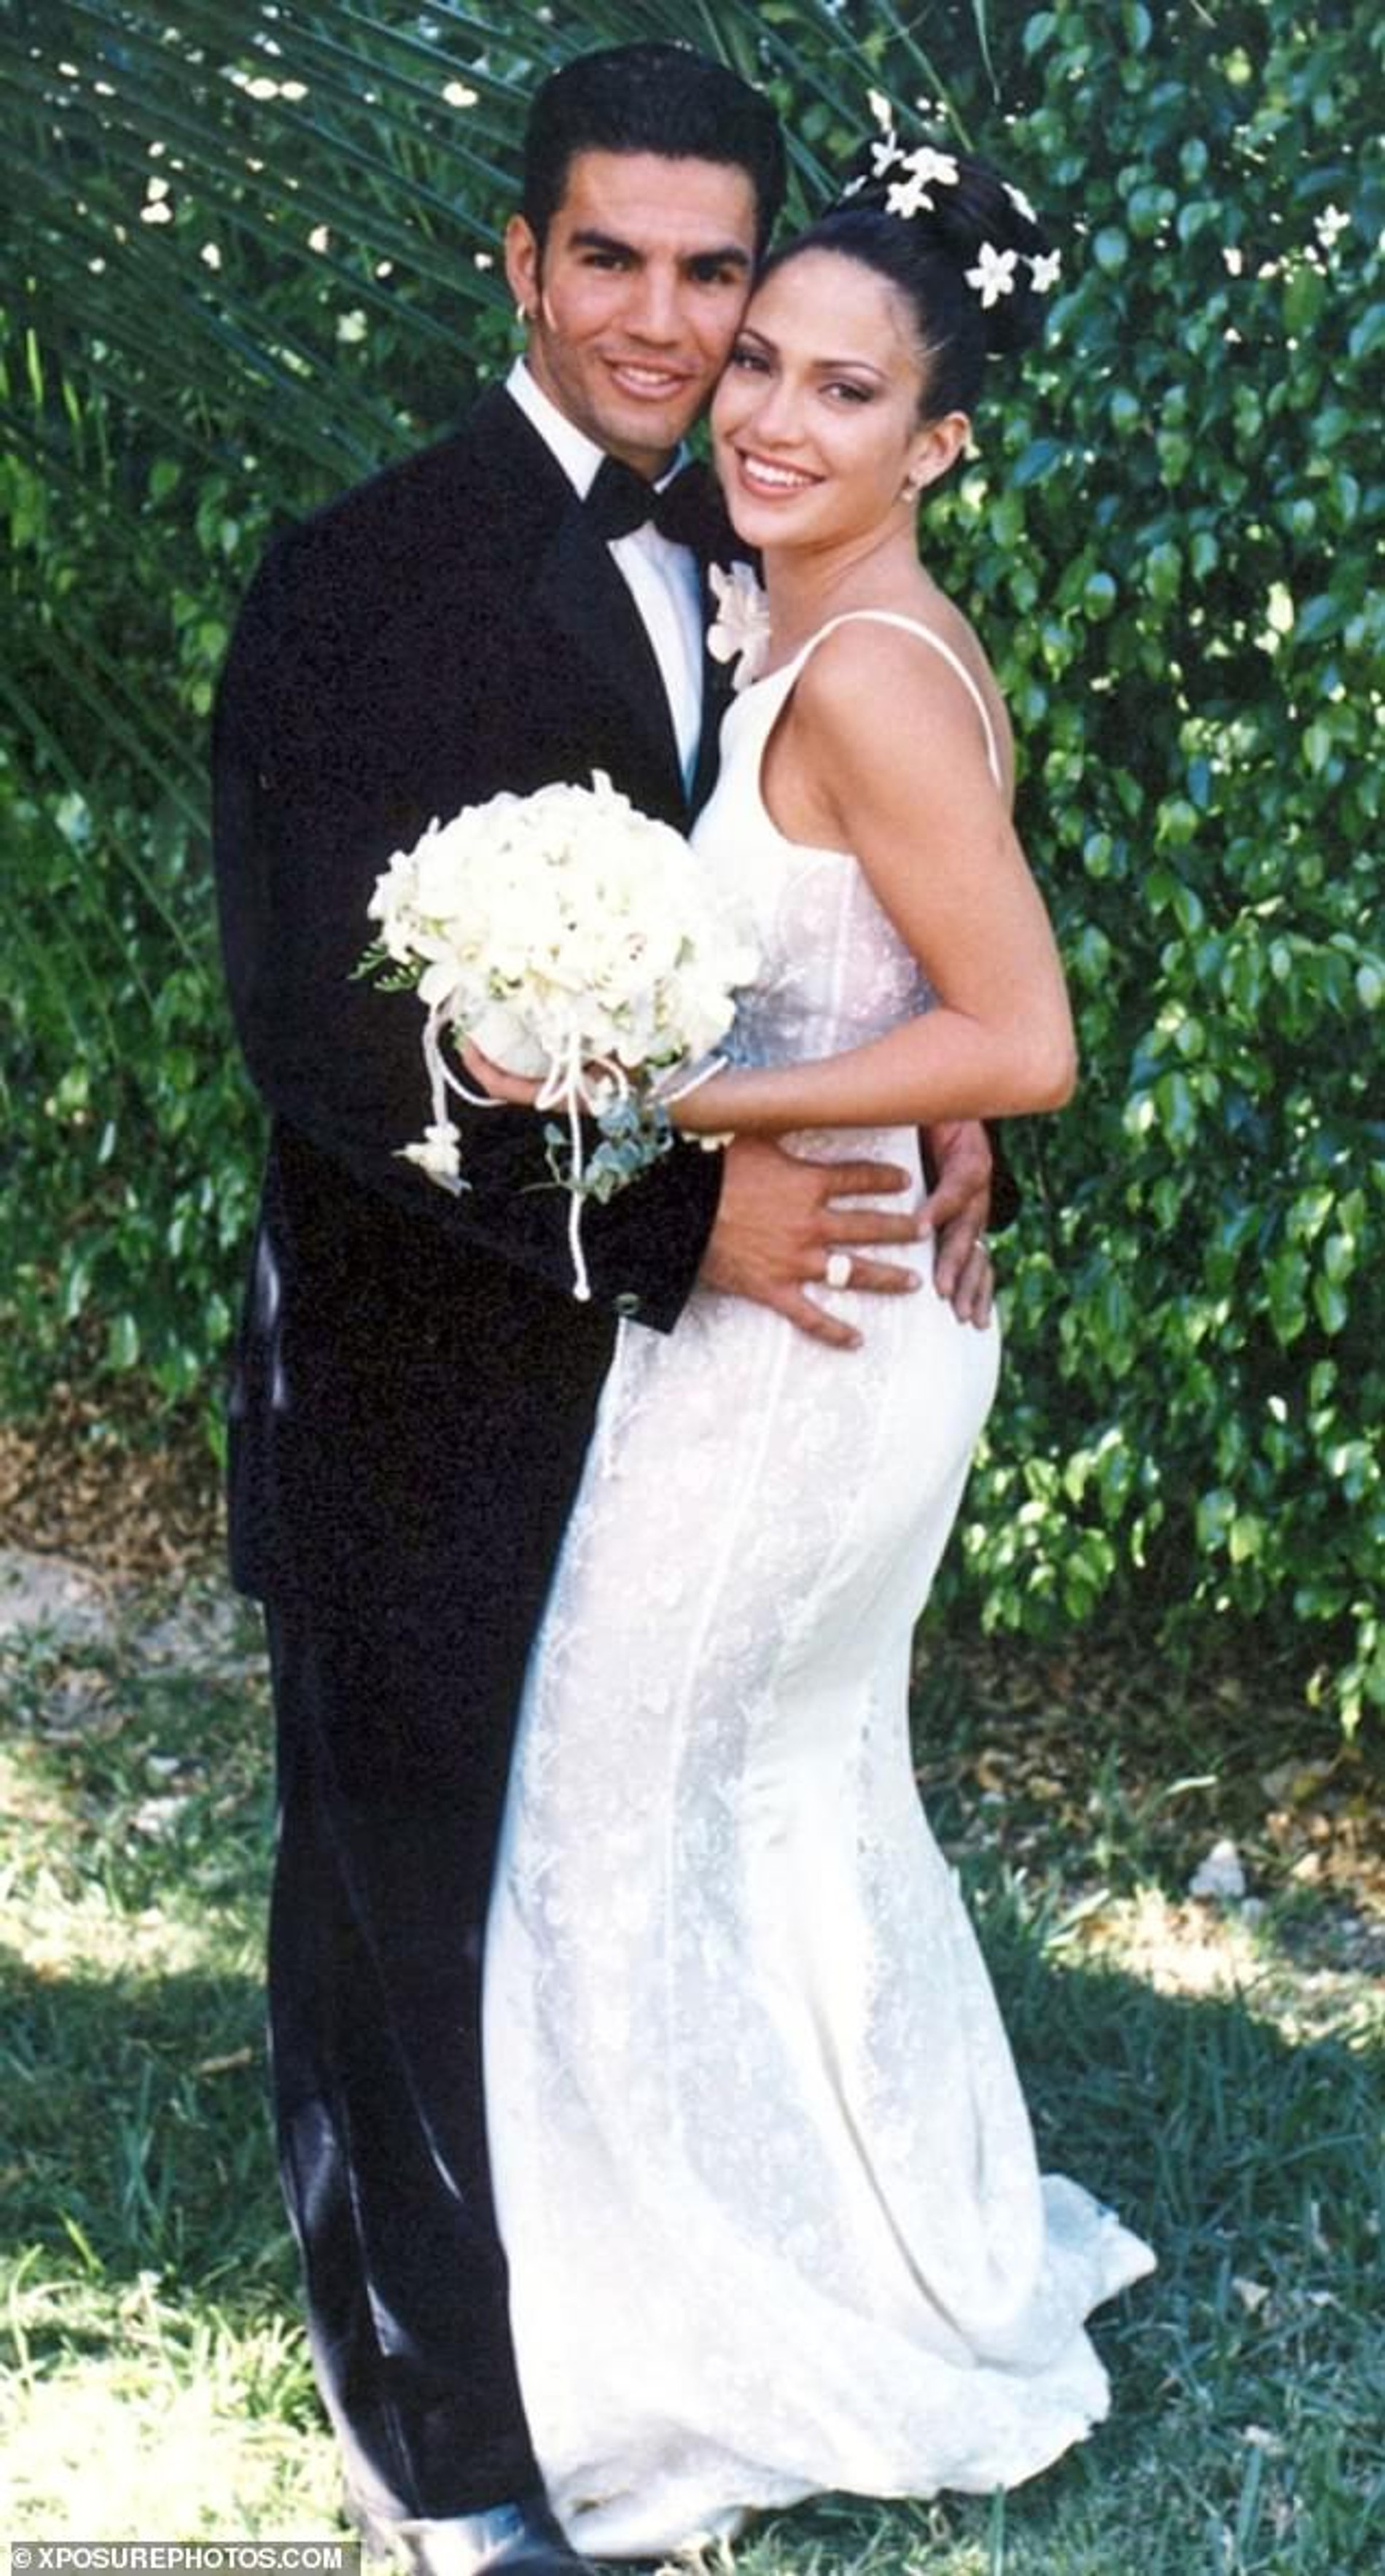 Дженнифер Лопес и её первый муж Охани Ноа
Фото: xposurephoros.com